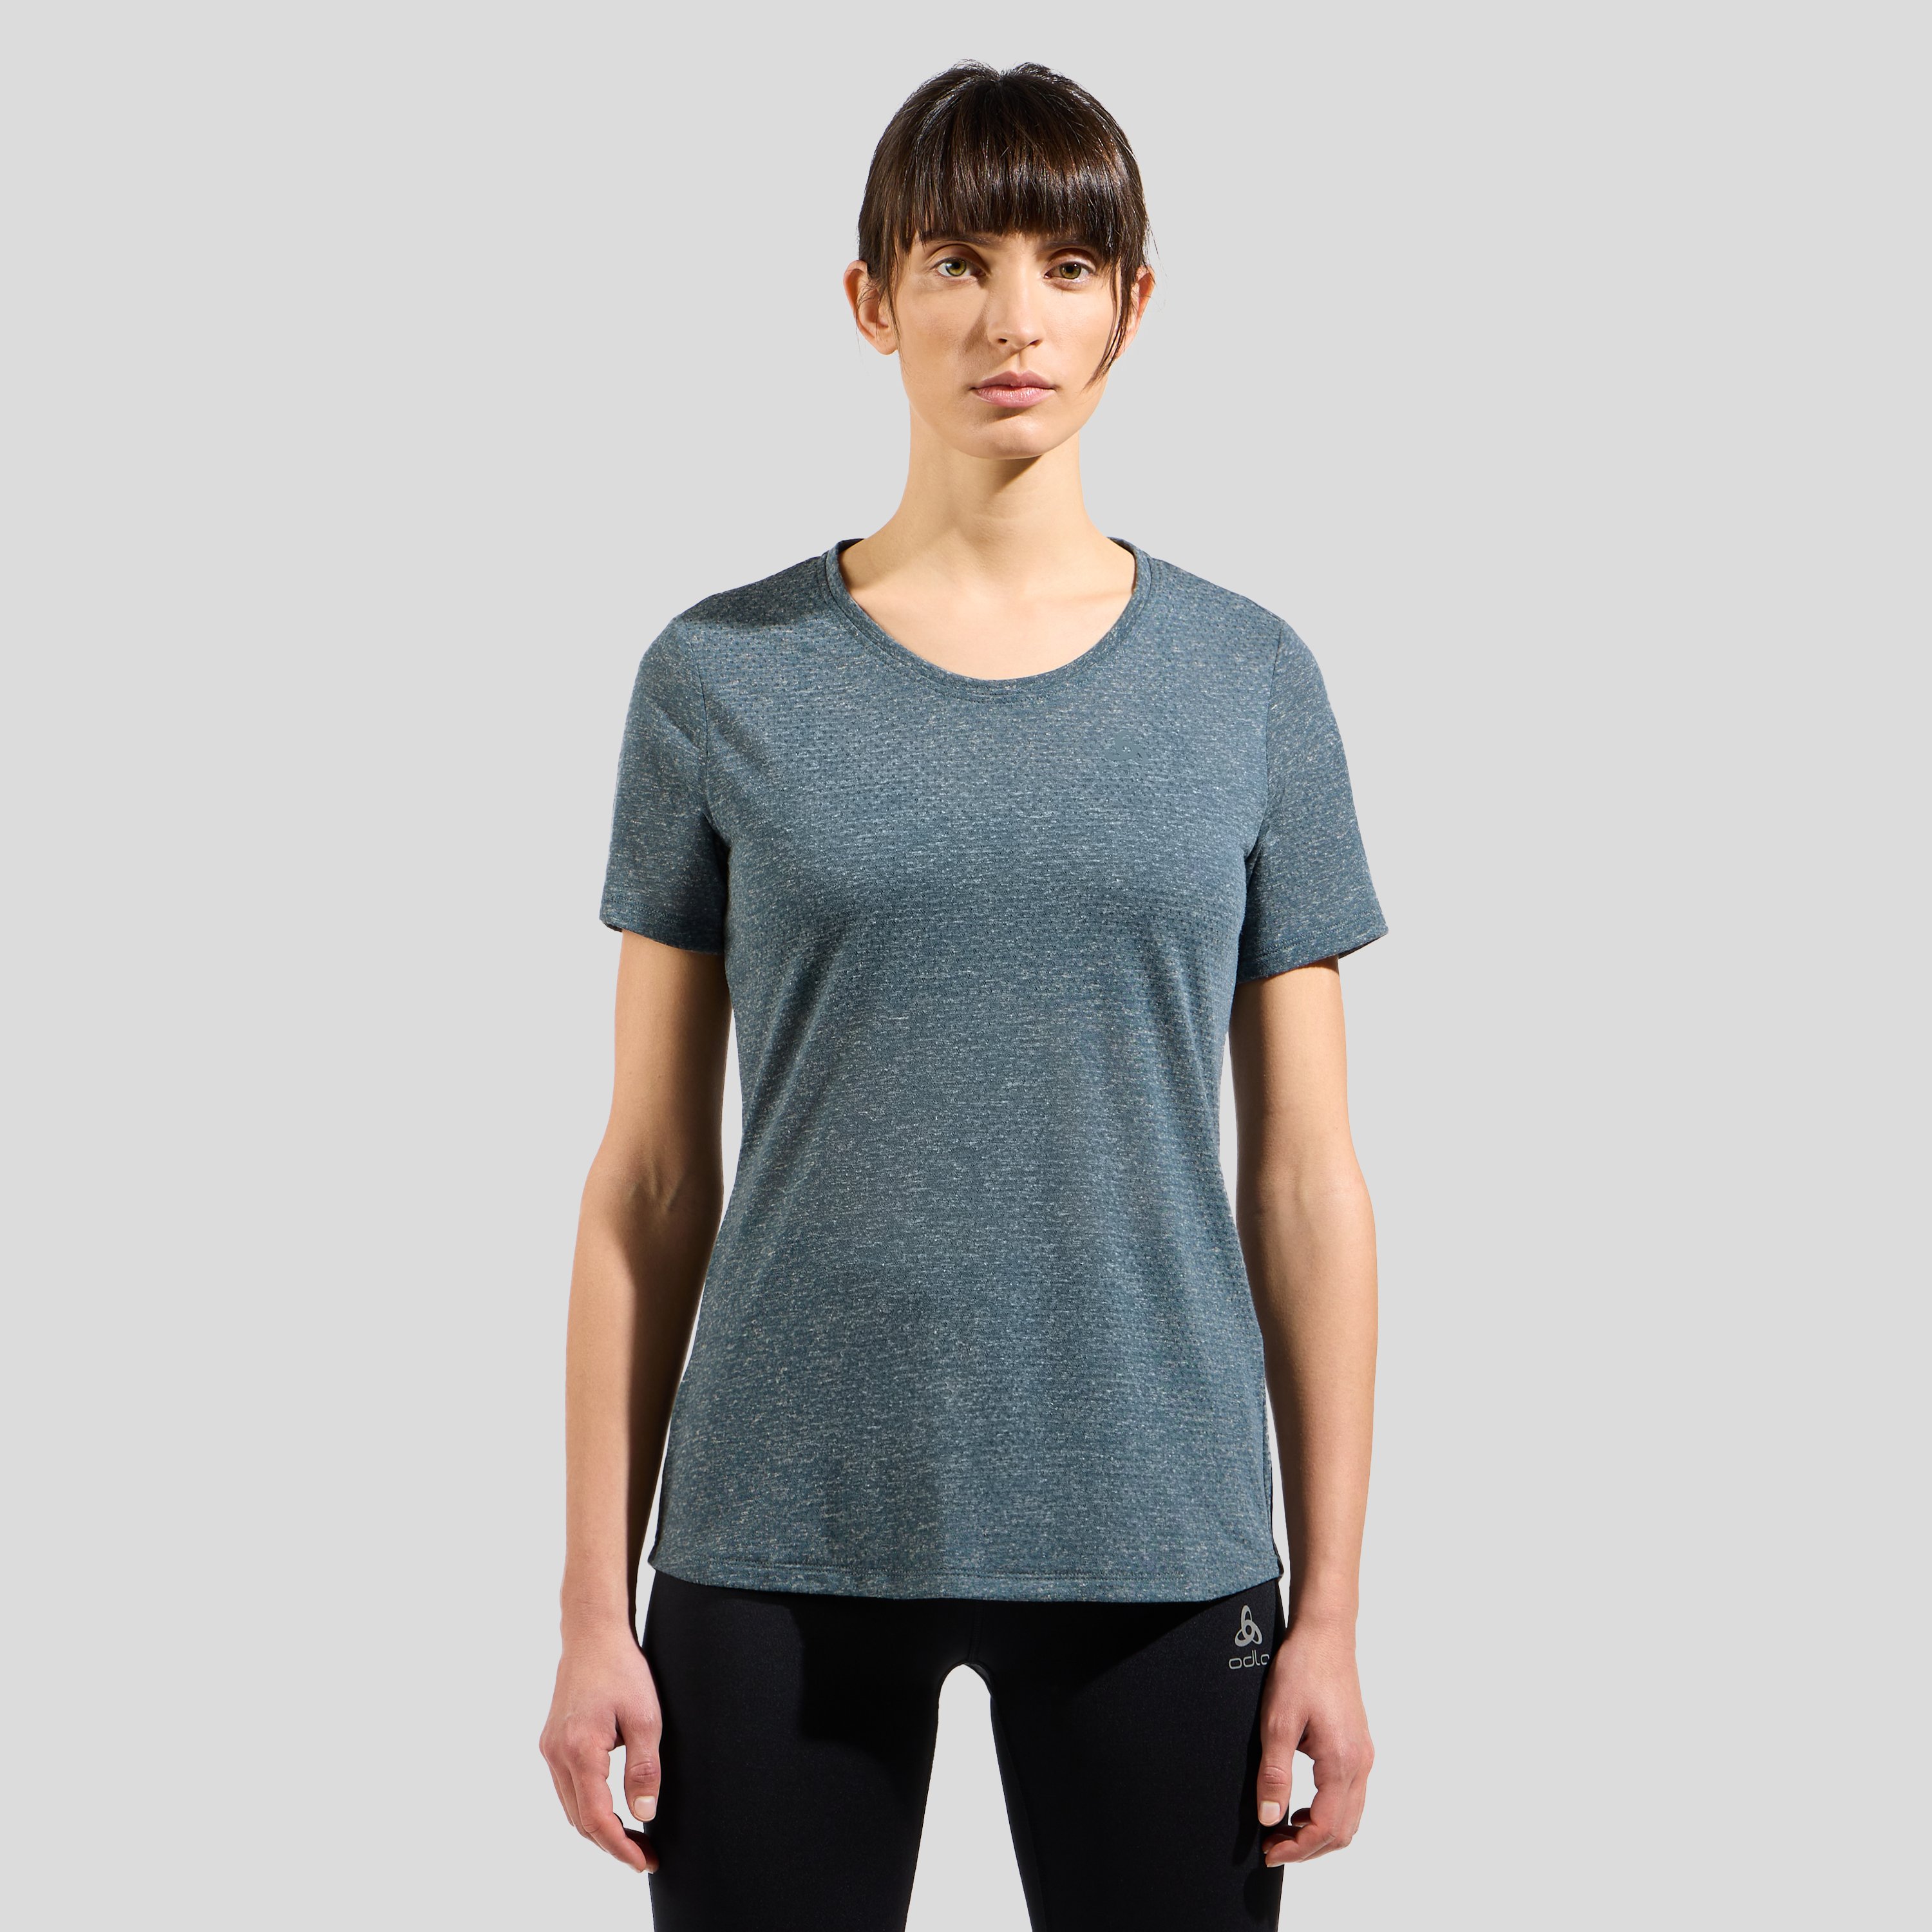 Odlo T-shirt Active 365 Linencool pour femme, XL, bleu pétrole